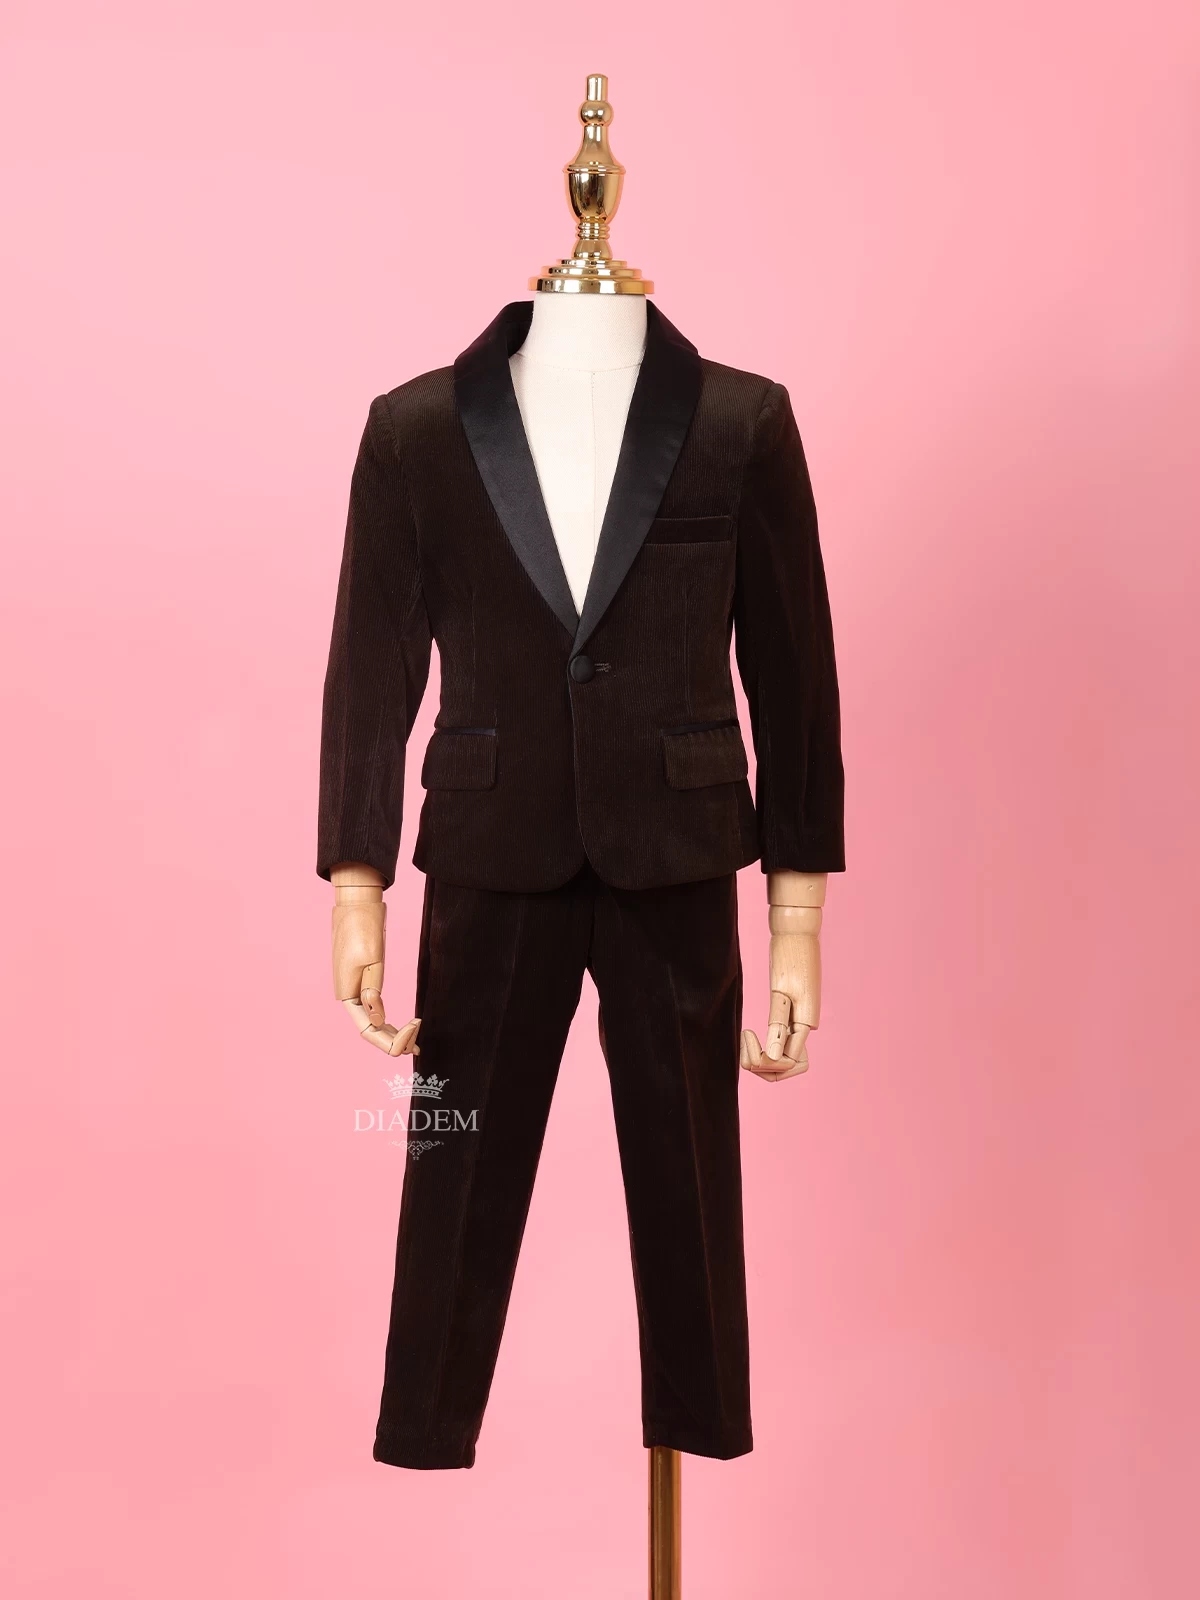 Velvet Tuxedo Coat and Suit for Boys